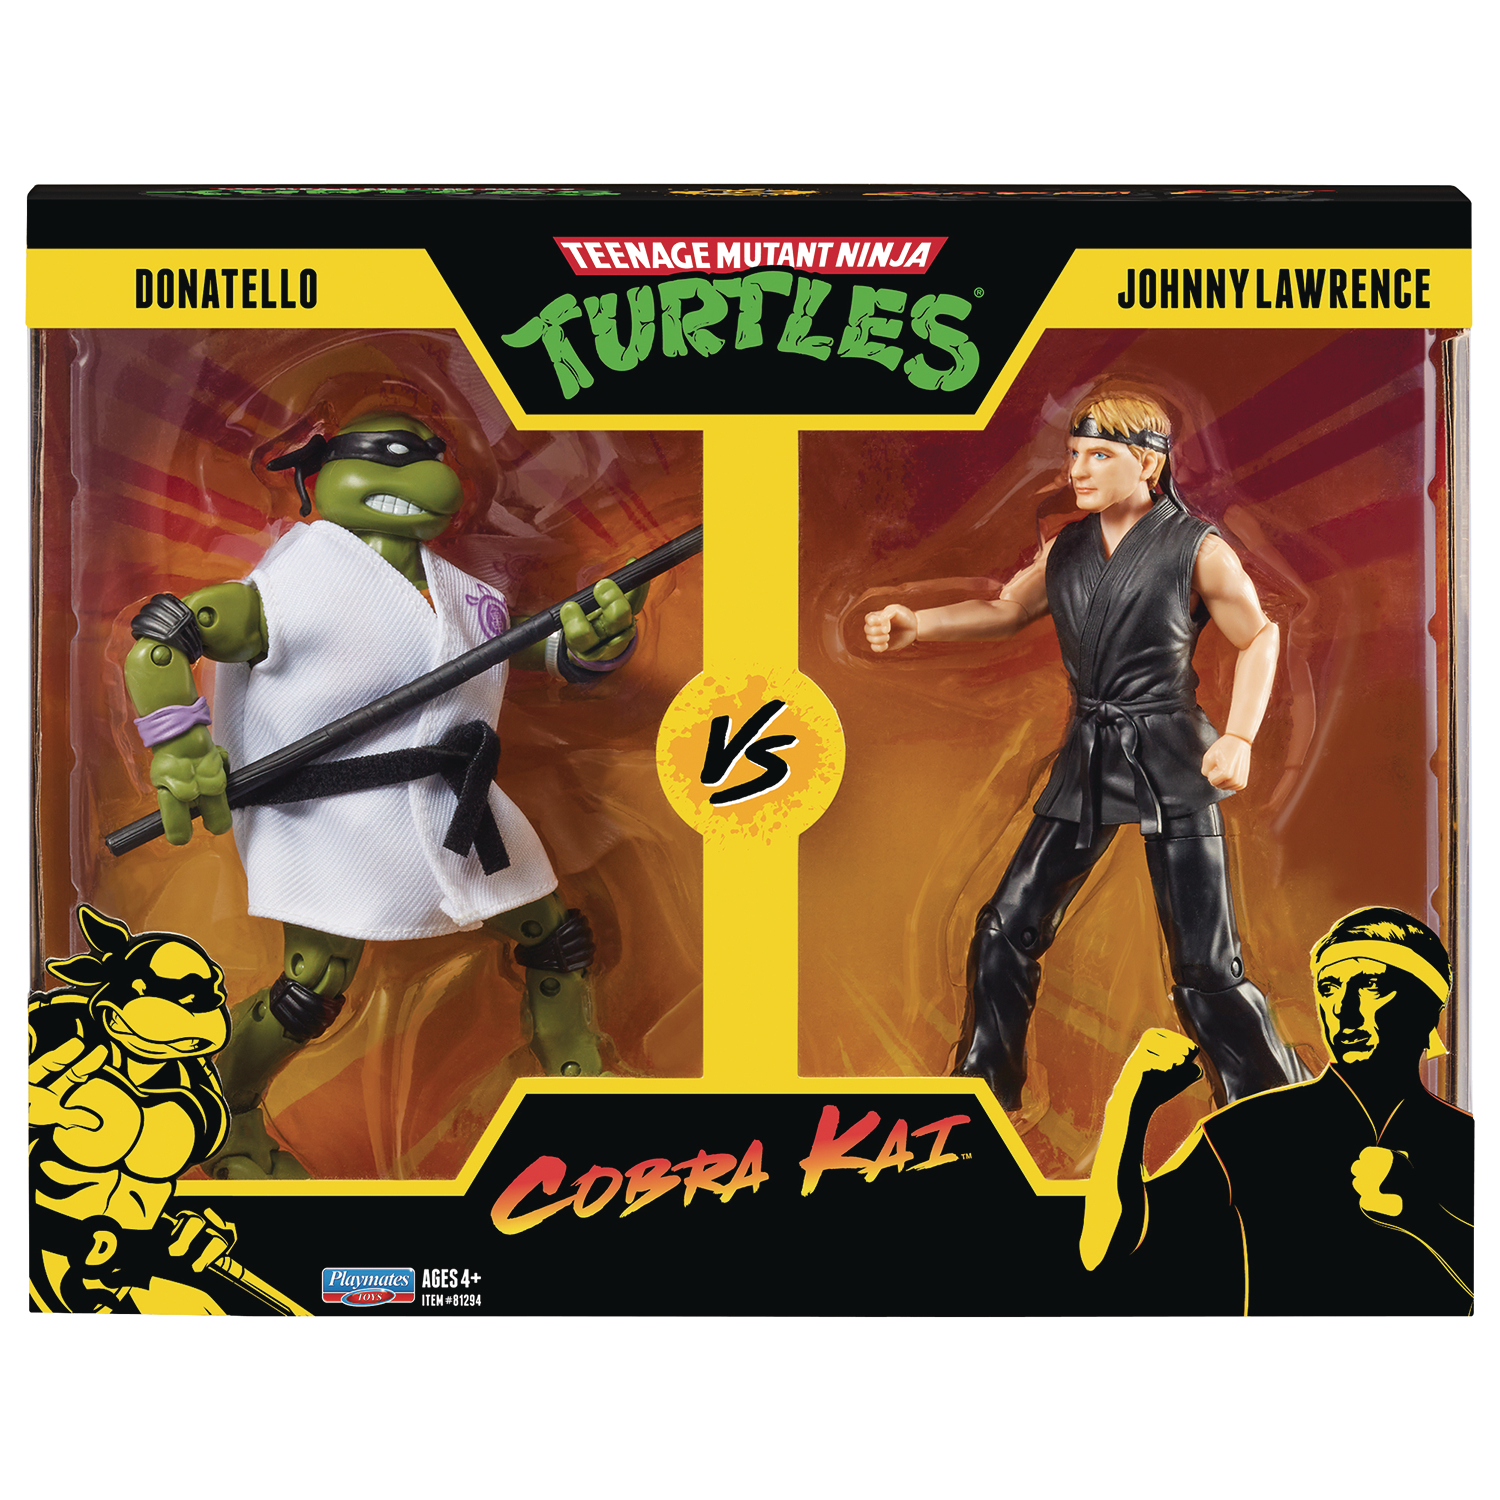 Teenage Mutant Ninja Turtles X Cobra Kai Donatello Vs Johnny Lawrence Action Figure 2pk